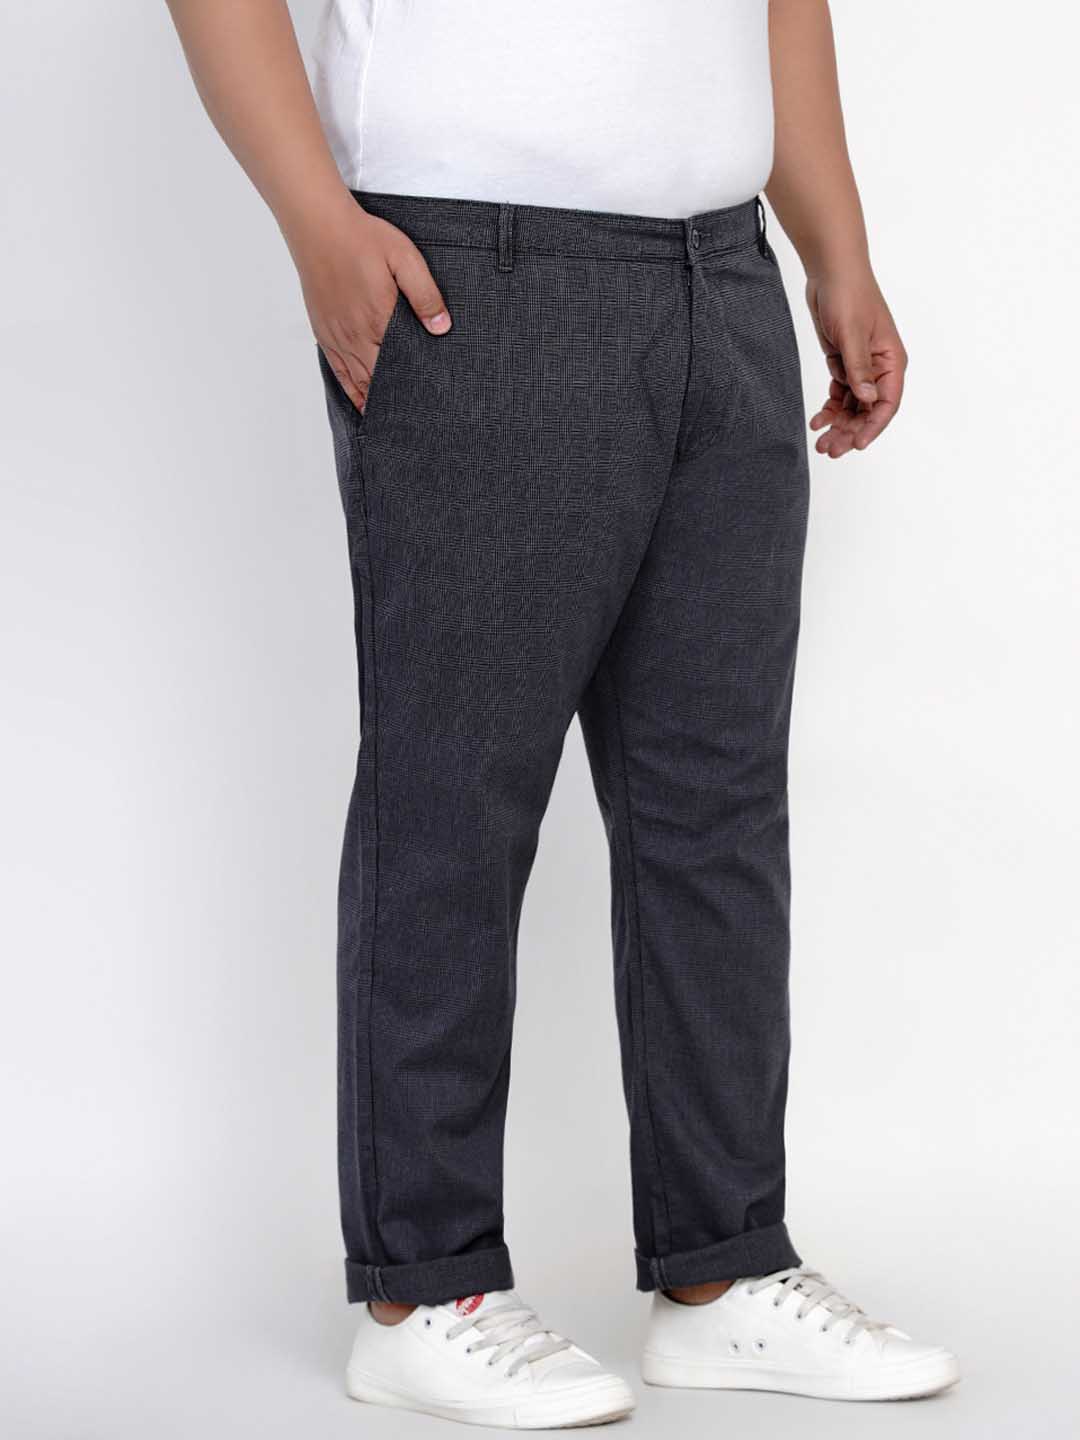 bottomwear/trousers/JPTR2148A/jptr2148a-2.jpg